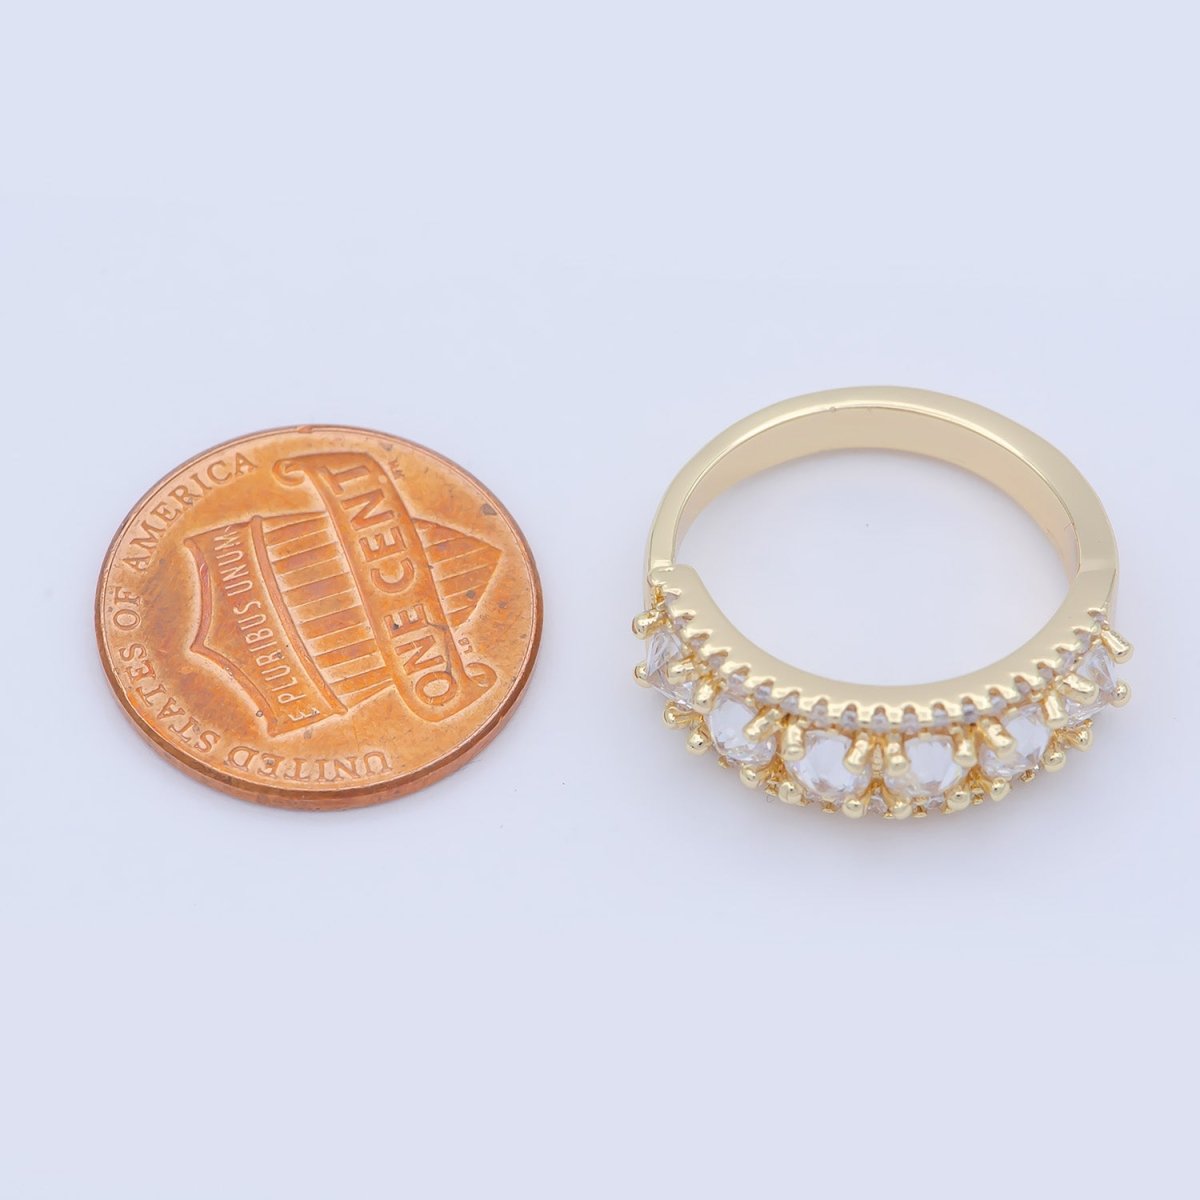 18K Gold Filled Stacking Eternity Round Minimalist CZ Wedding Band Ring adjustable US SIZE 5 O-478 - DLUXCA